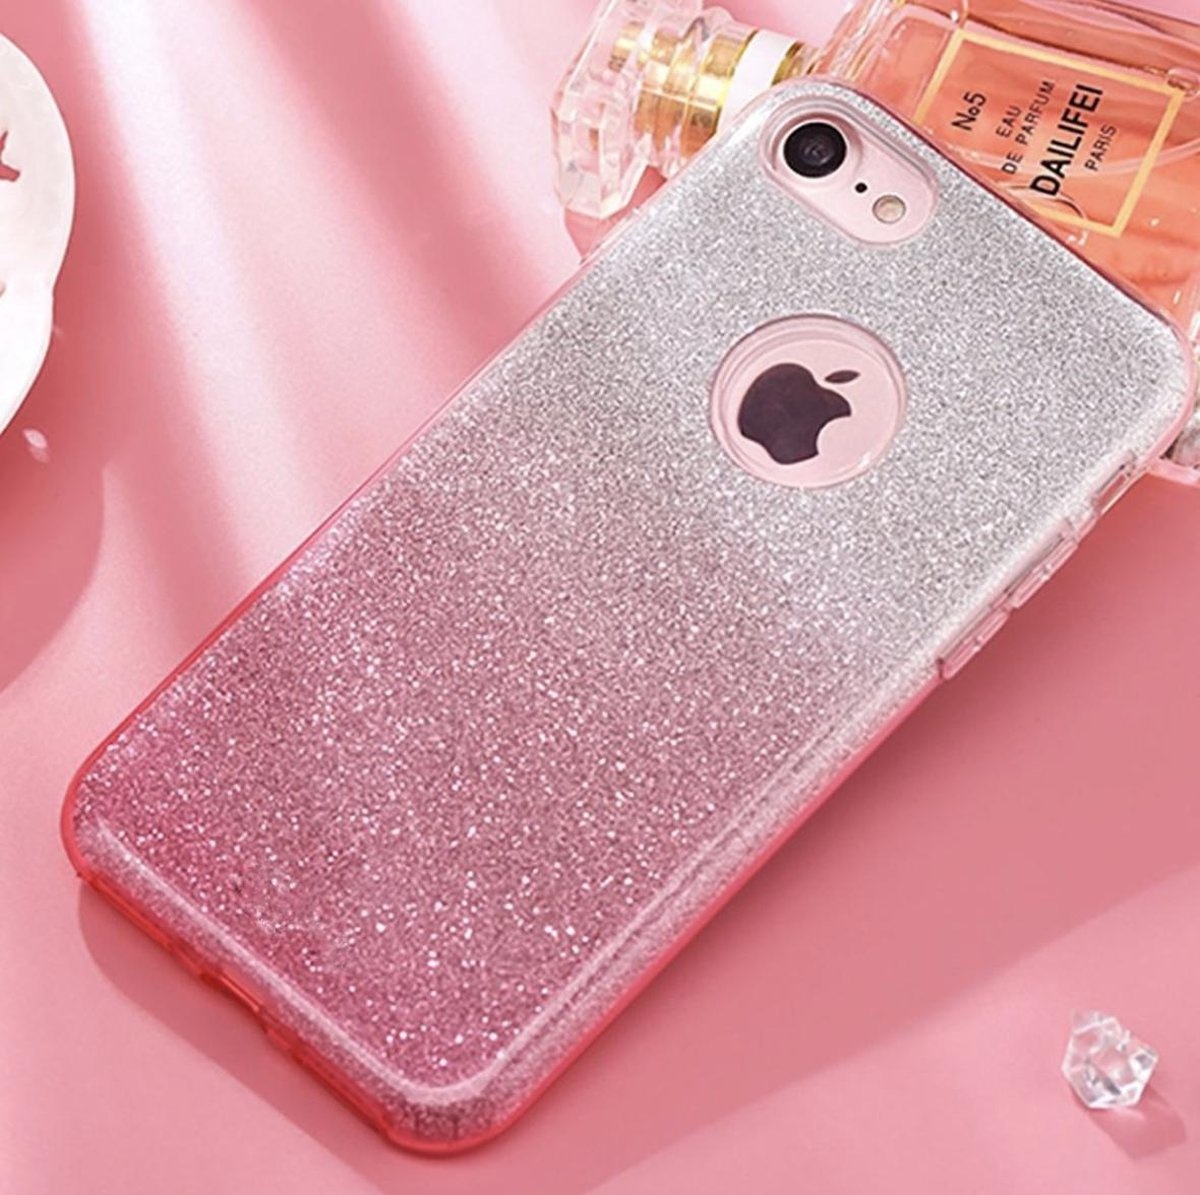 bespotten moeder Lotsbestemming Luxueuze Glitter Hoesje - iPhone 6 6S - Roze - Bling Bling cover - TPU case  - YPCd